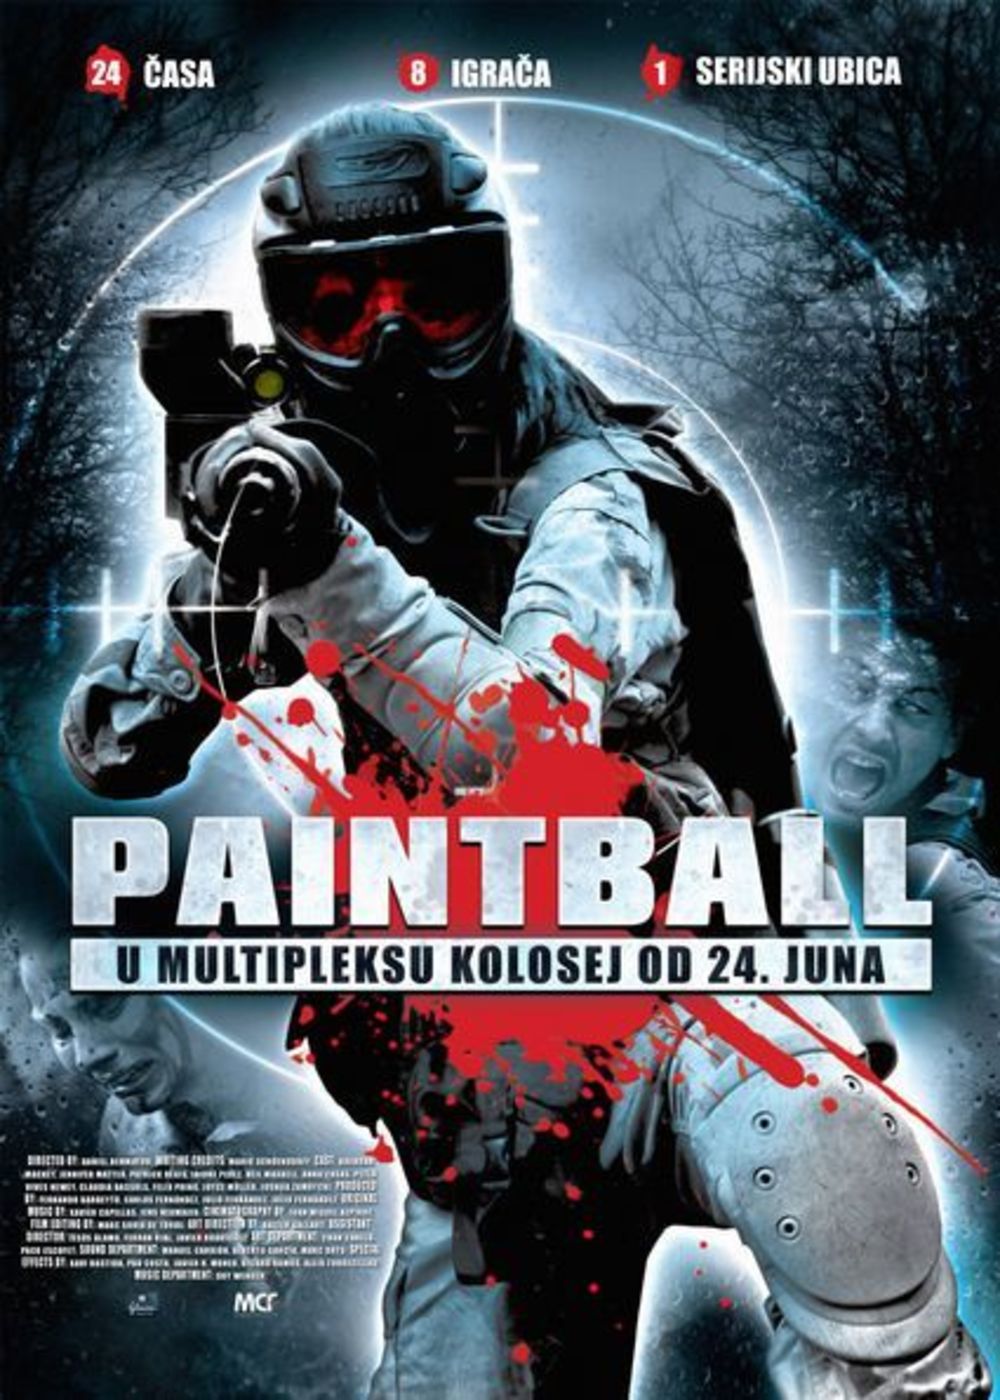 Horor film Paintball, o grupi mladih ljubitelja pejntbola koje tokom igre počinje da progoni nepoznati napadač sa pravim mecima, od 24. juna nalazi se na redovno repertoaru multipleksa Kolosej.